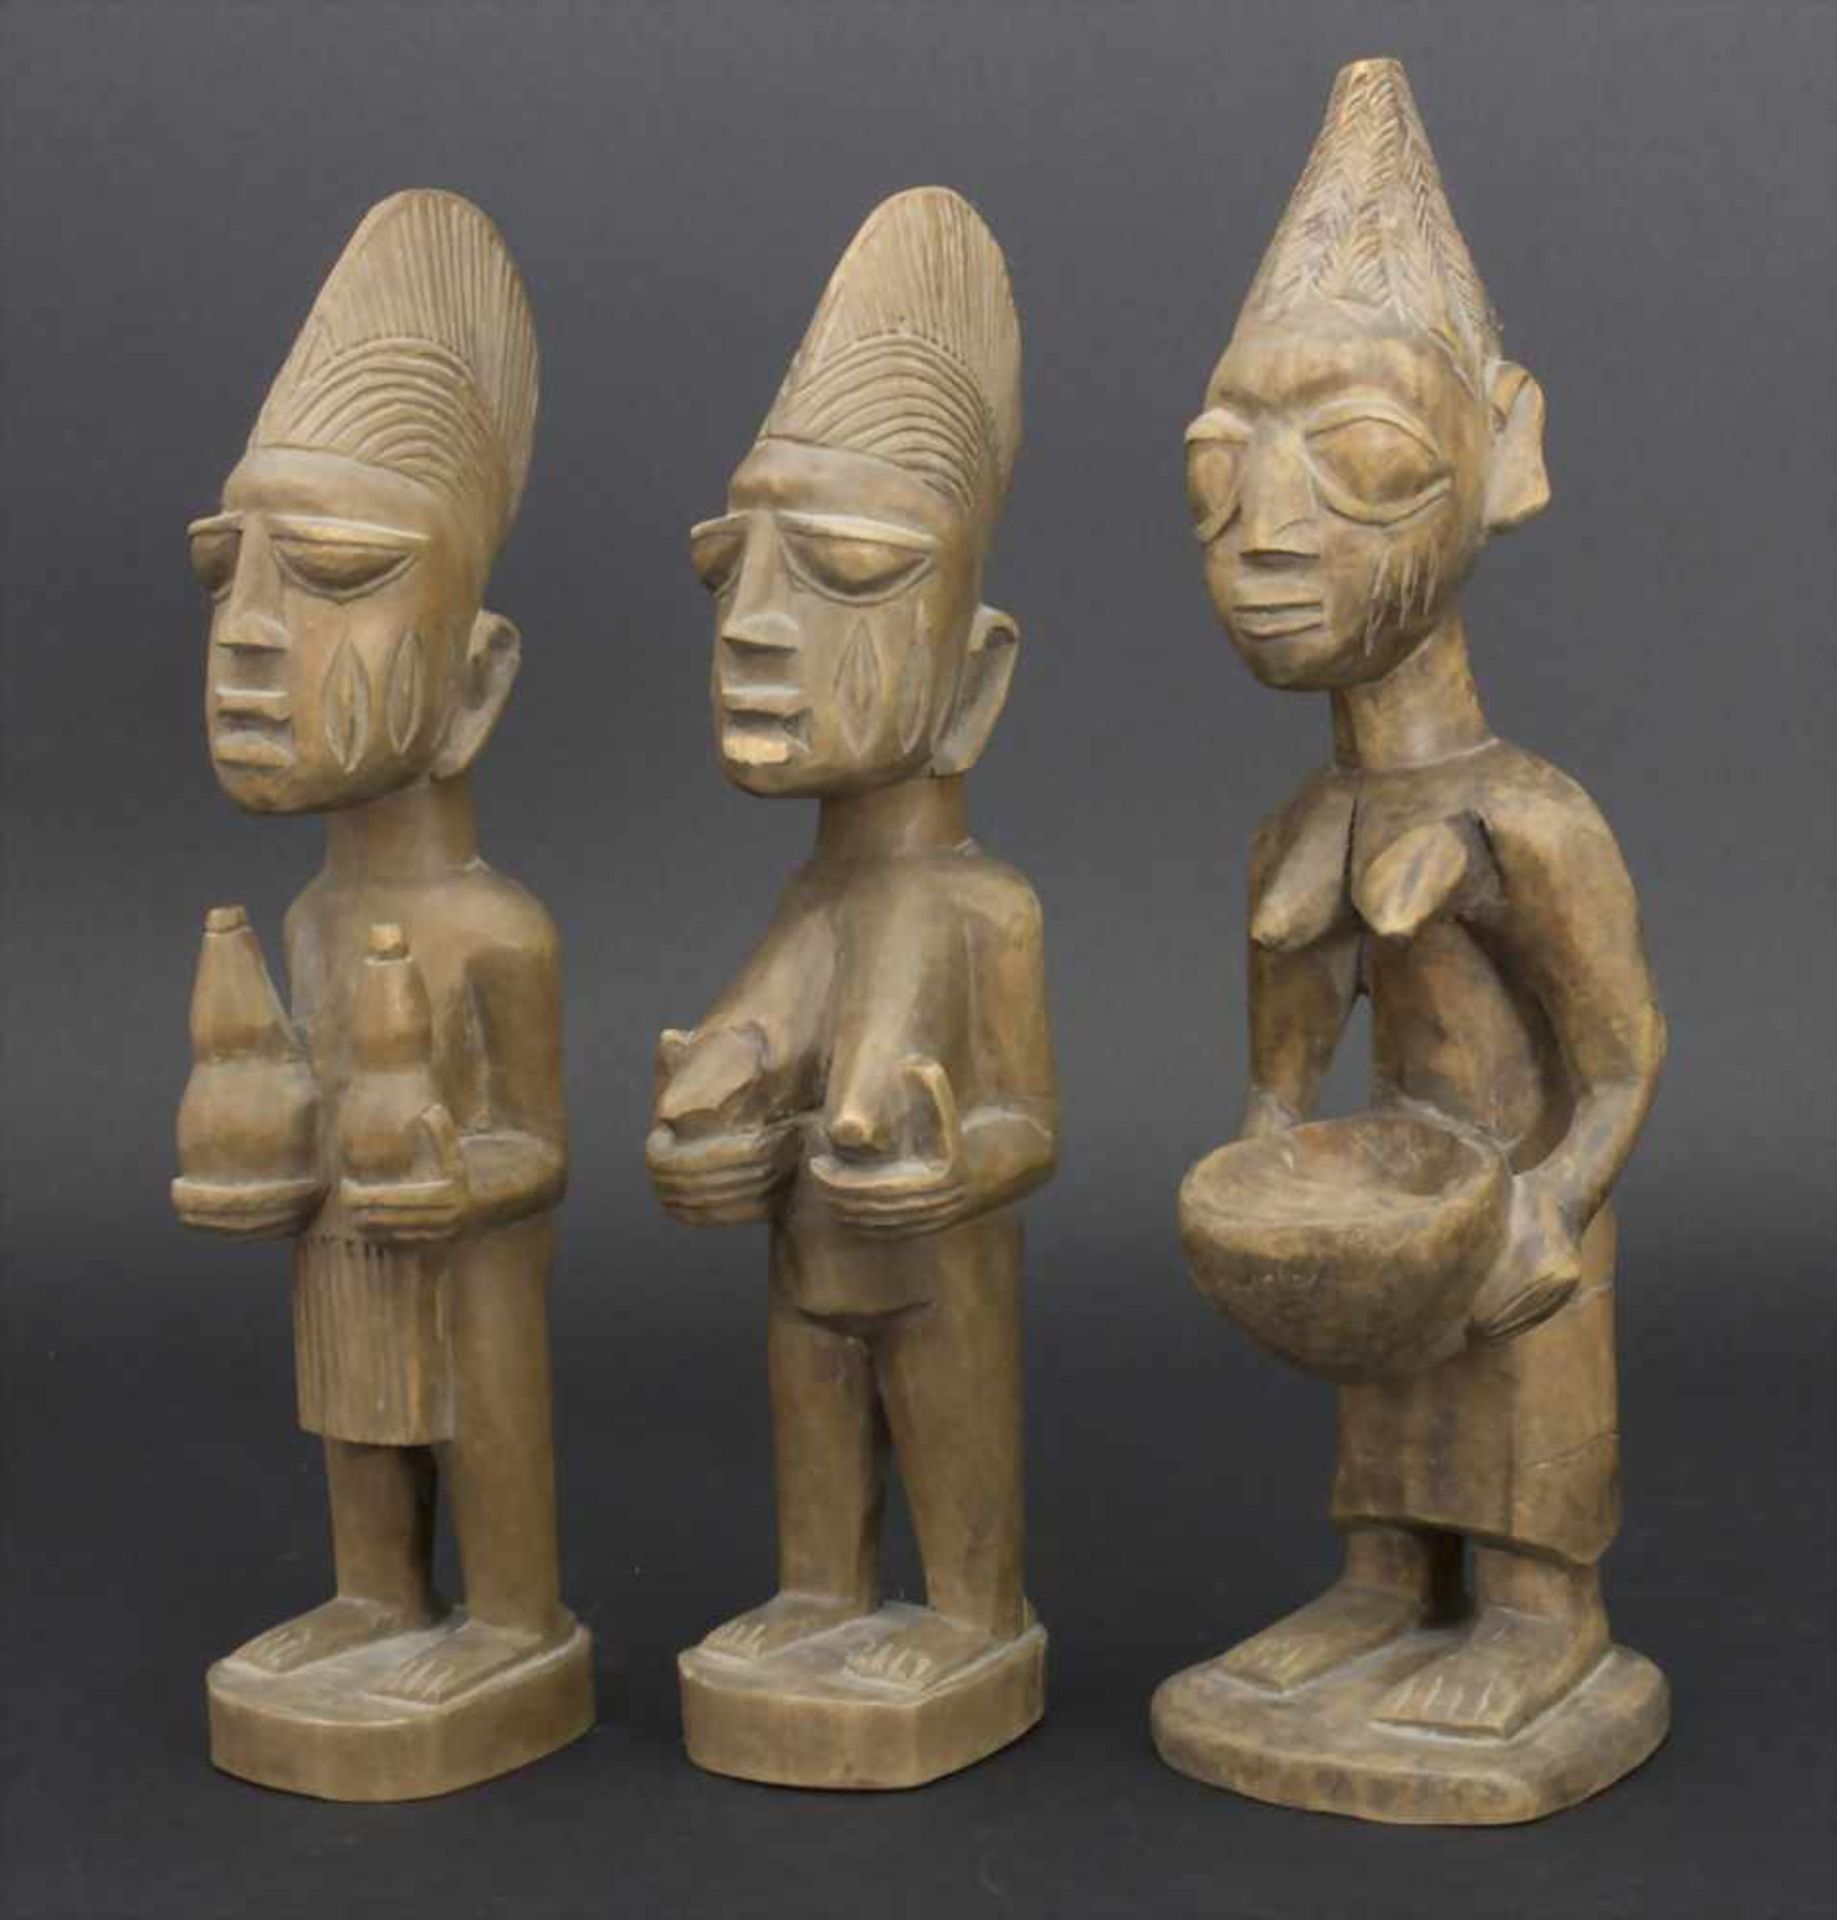 3 Ahnenfiguren, WestafrikaMaterial: Holz geschnitzt,Maße: 24 cm, 26 cm,Zustand: Trockenriße, kl.